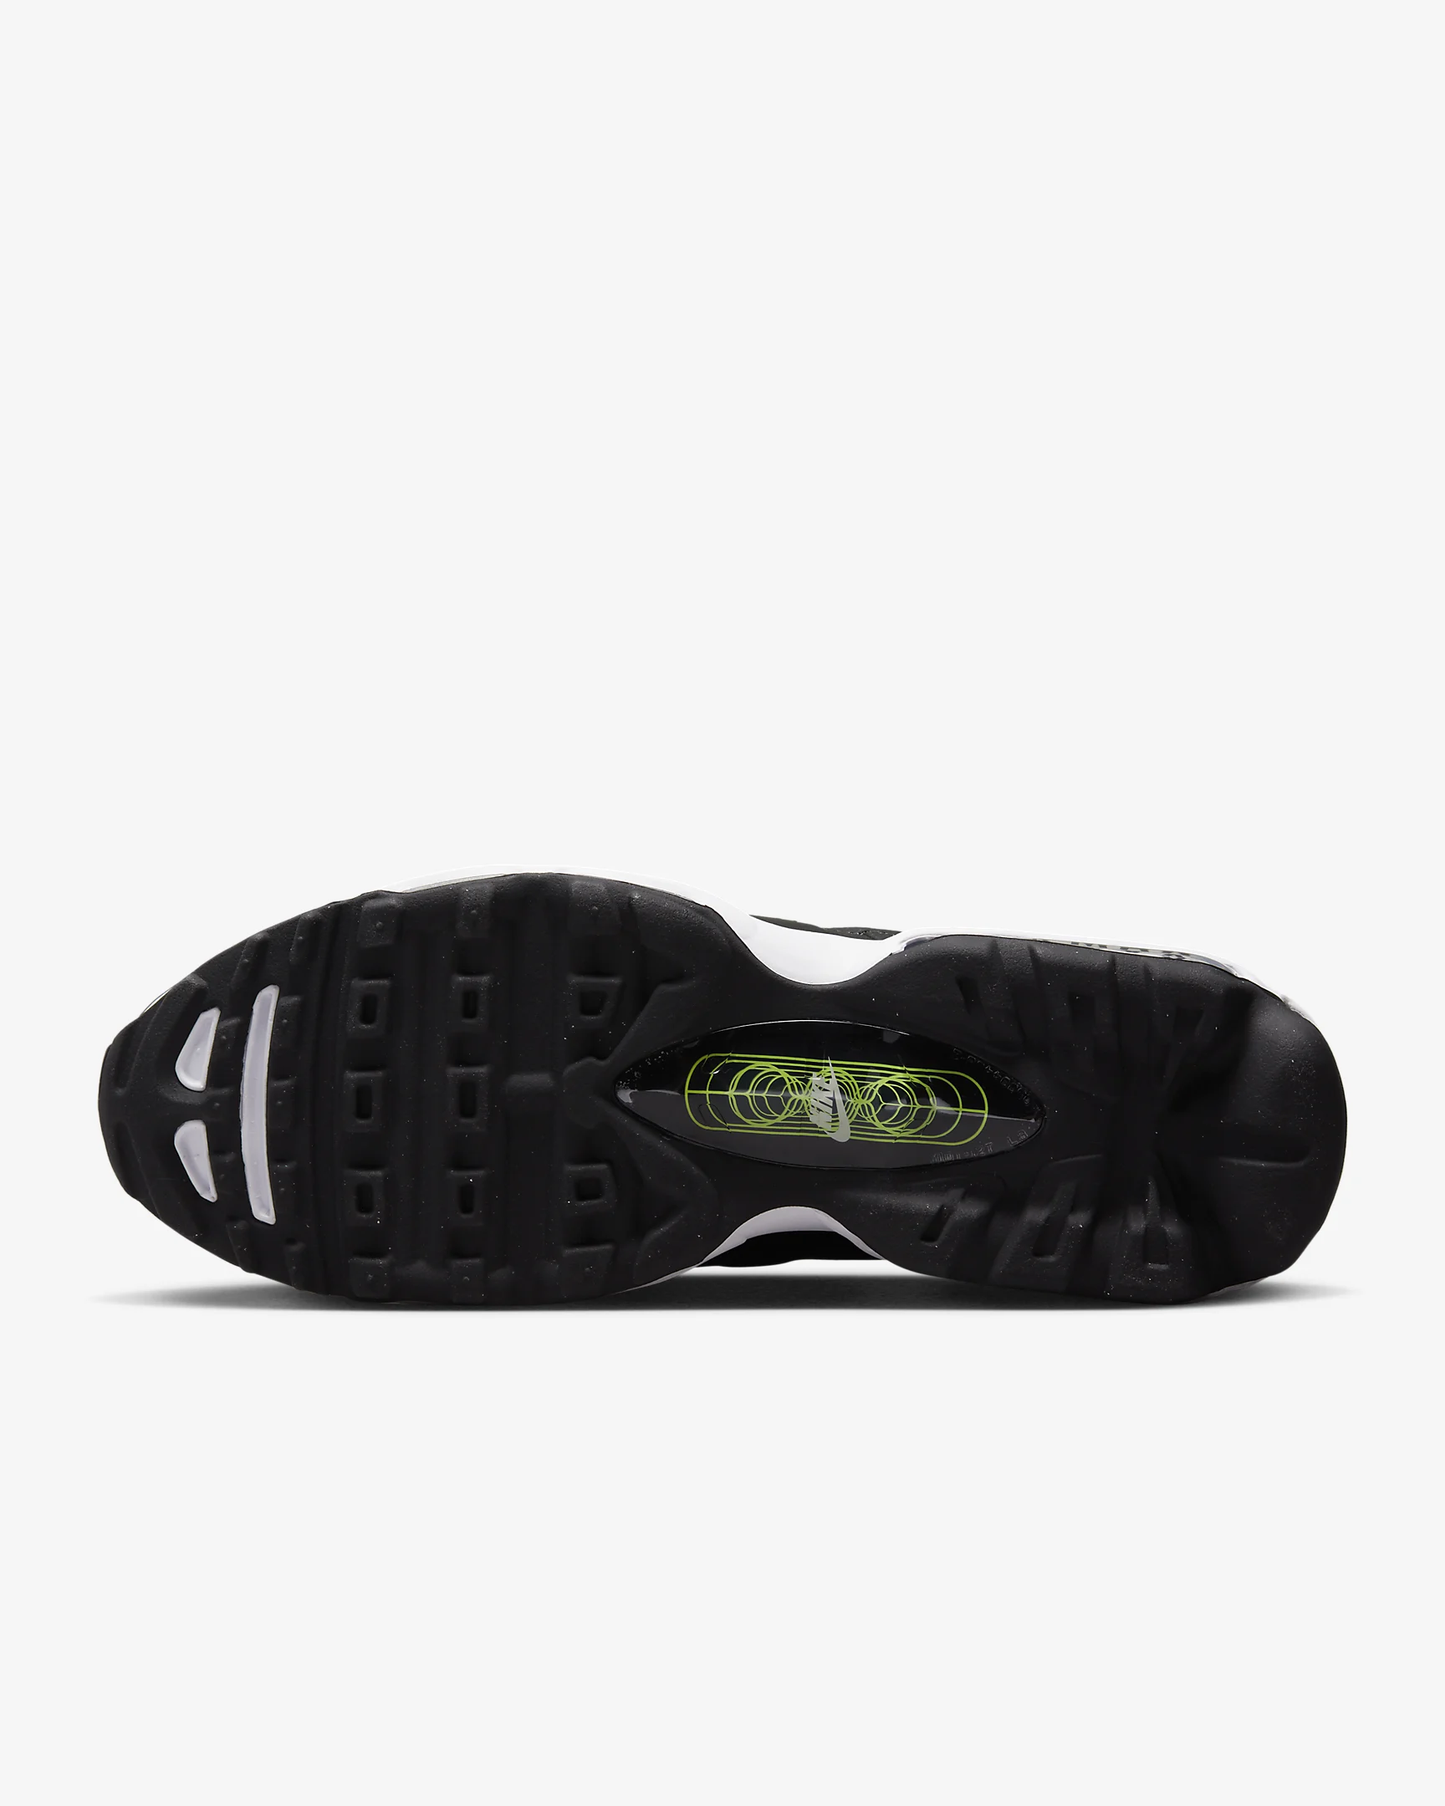 Nike - Air Max 95 Ultra - Black Volt White